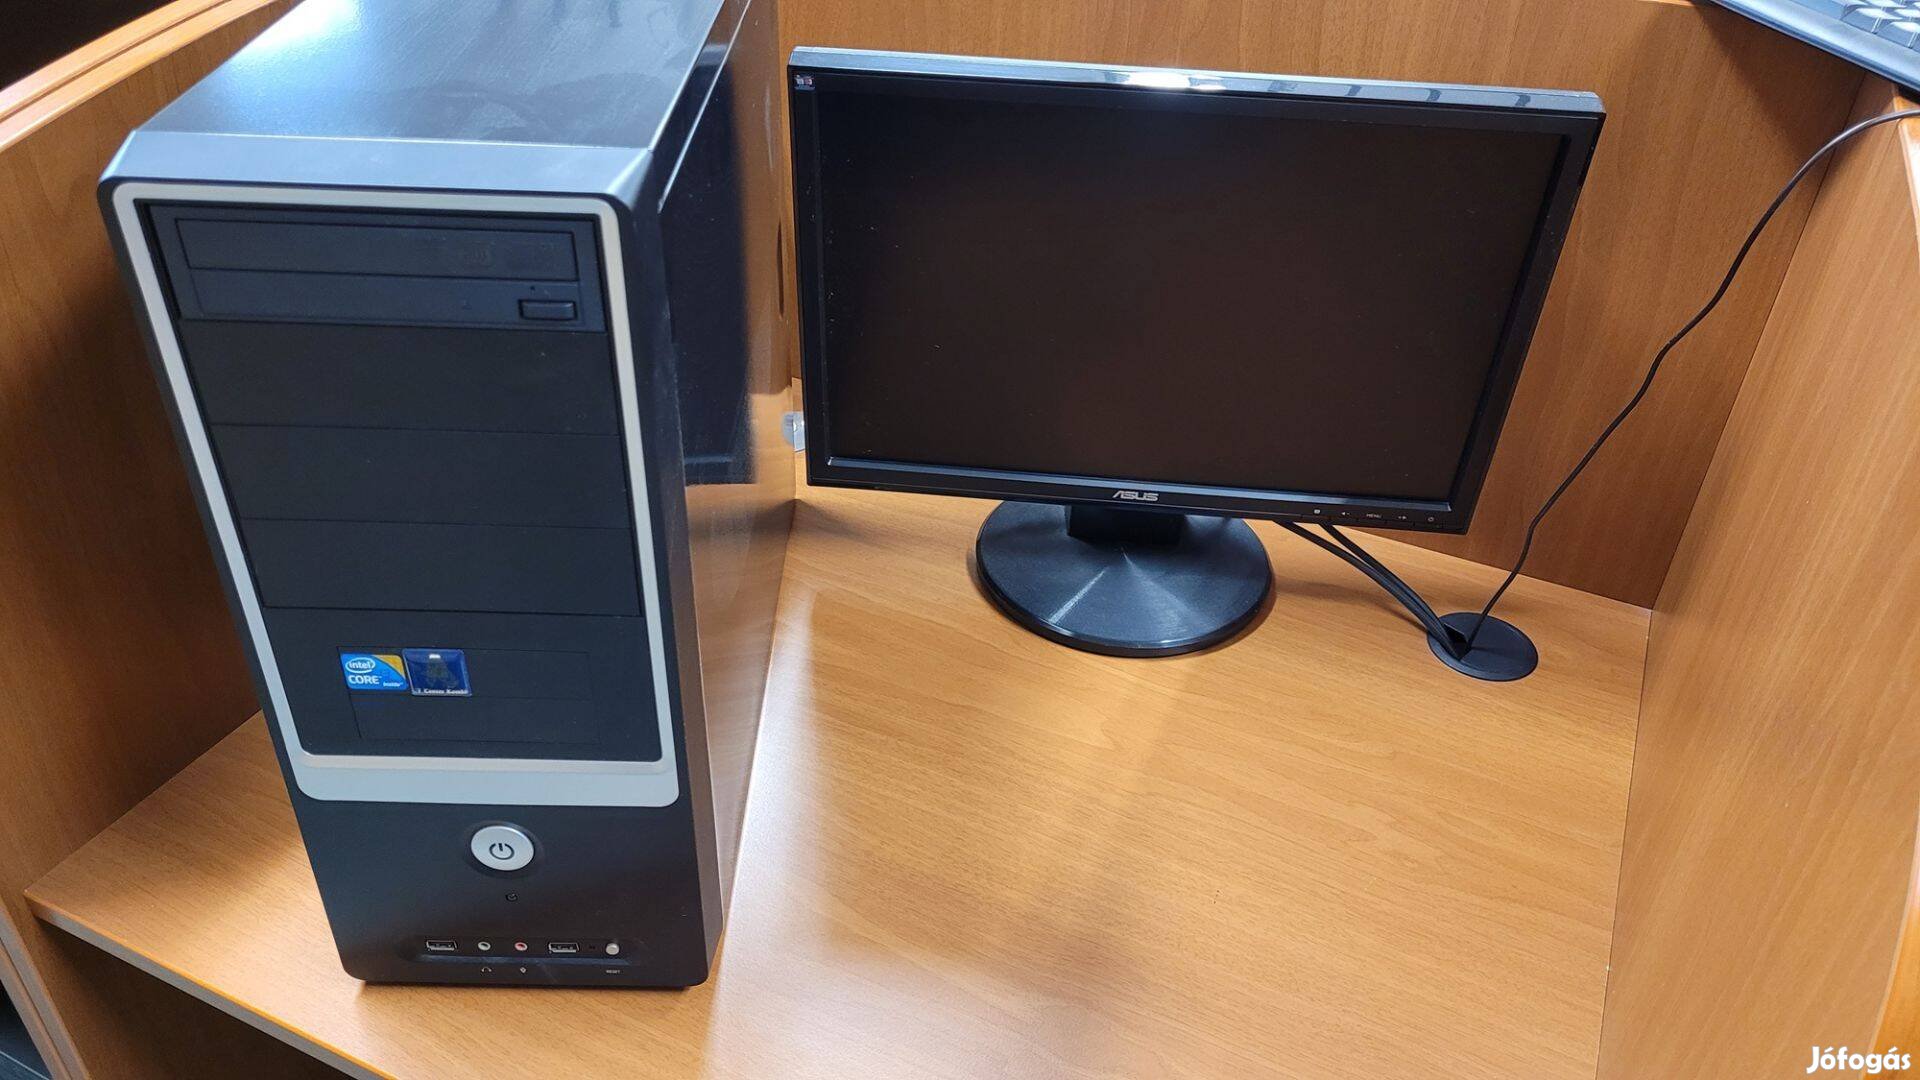 Komplett számítógép (szgép, monitor + asztal)